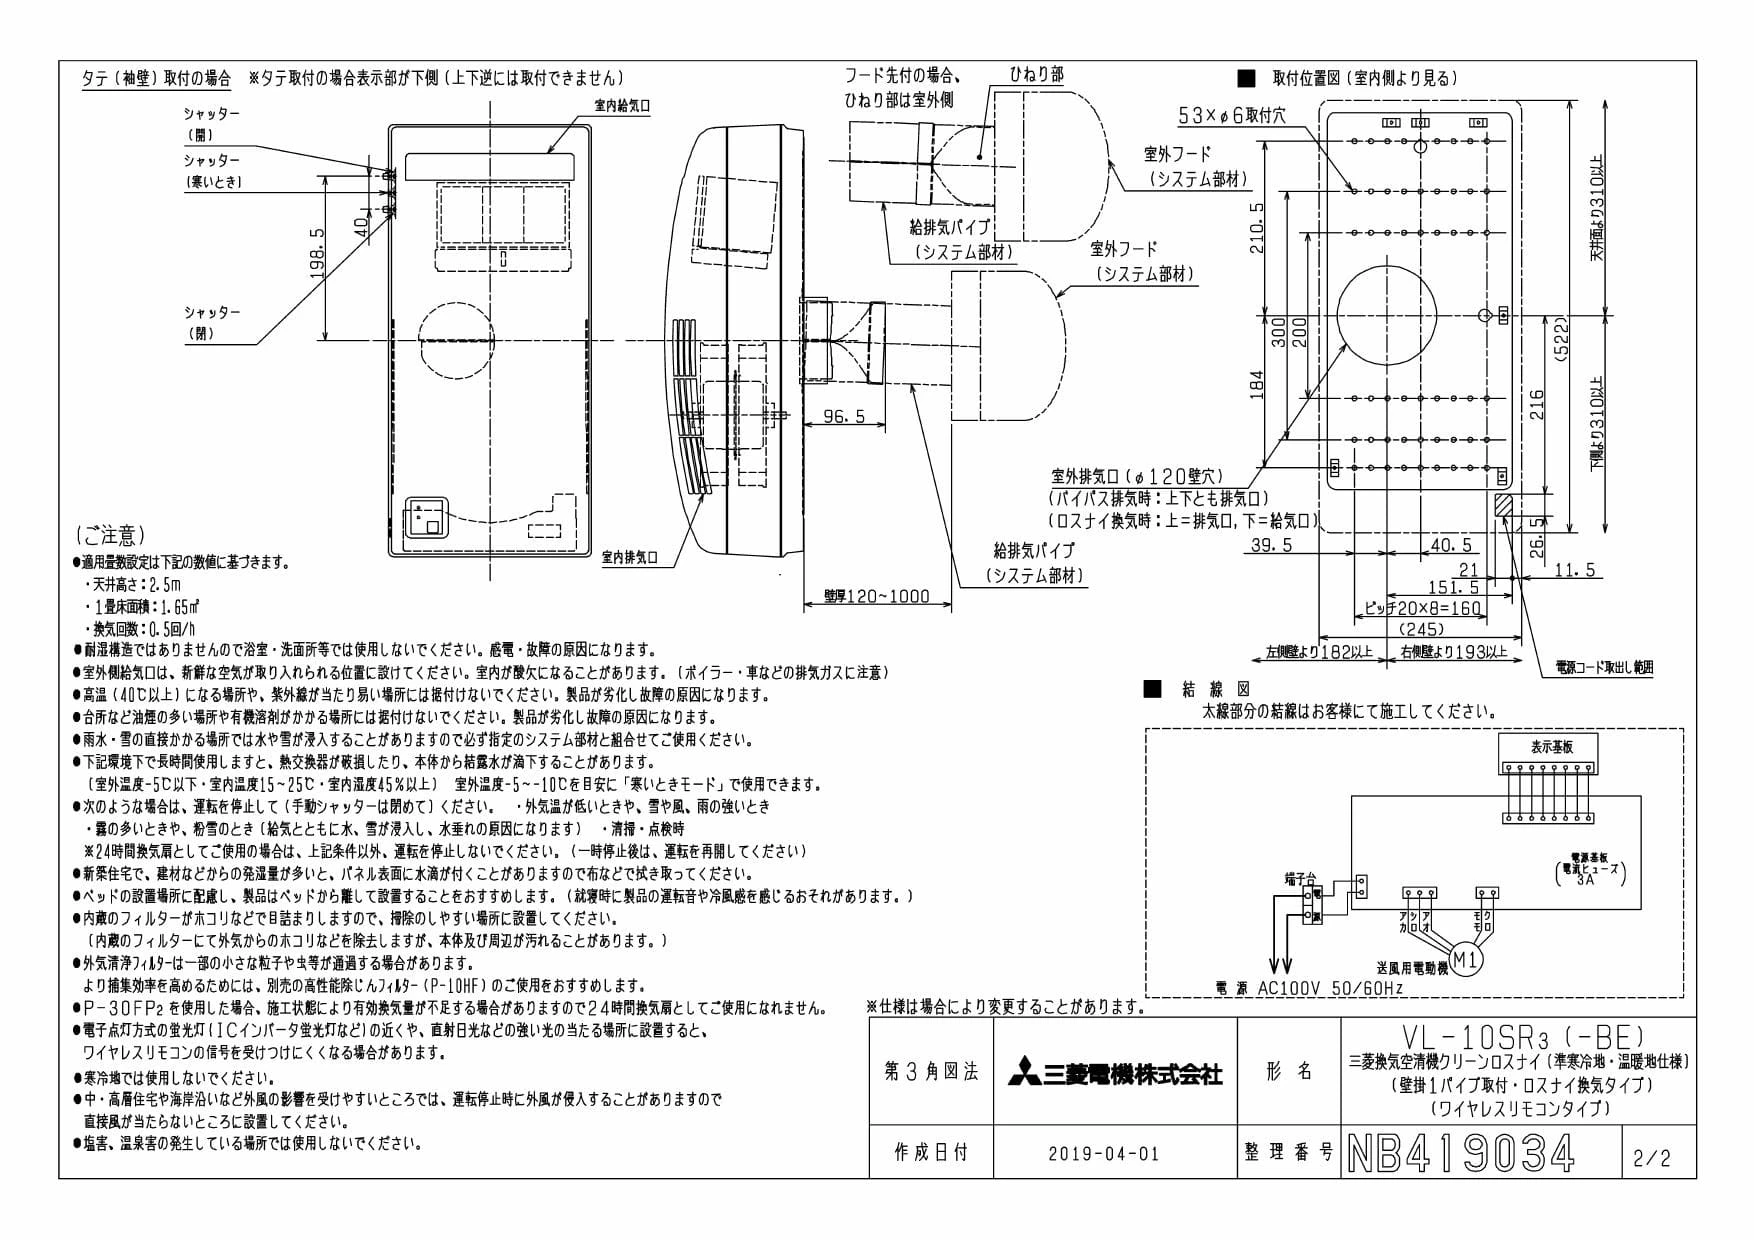 三菱電機 VL-10SR3取扱説明書 施工説明書 納入仕様図 | 通販 プロ